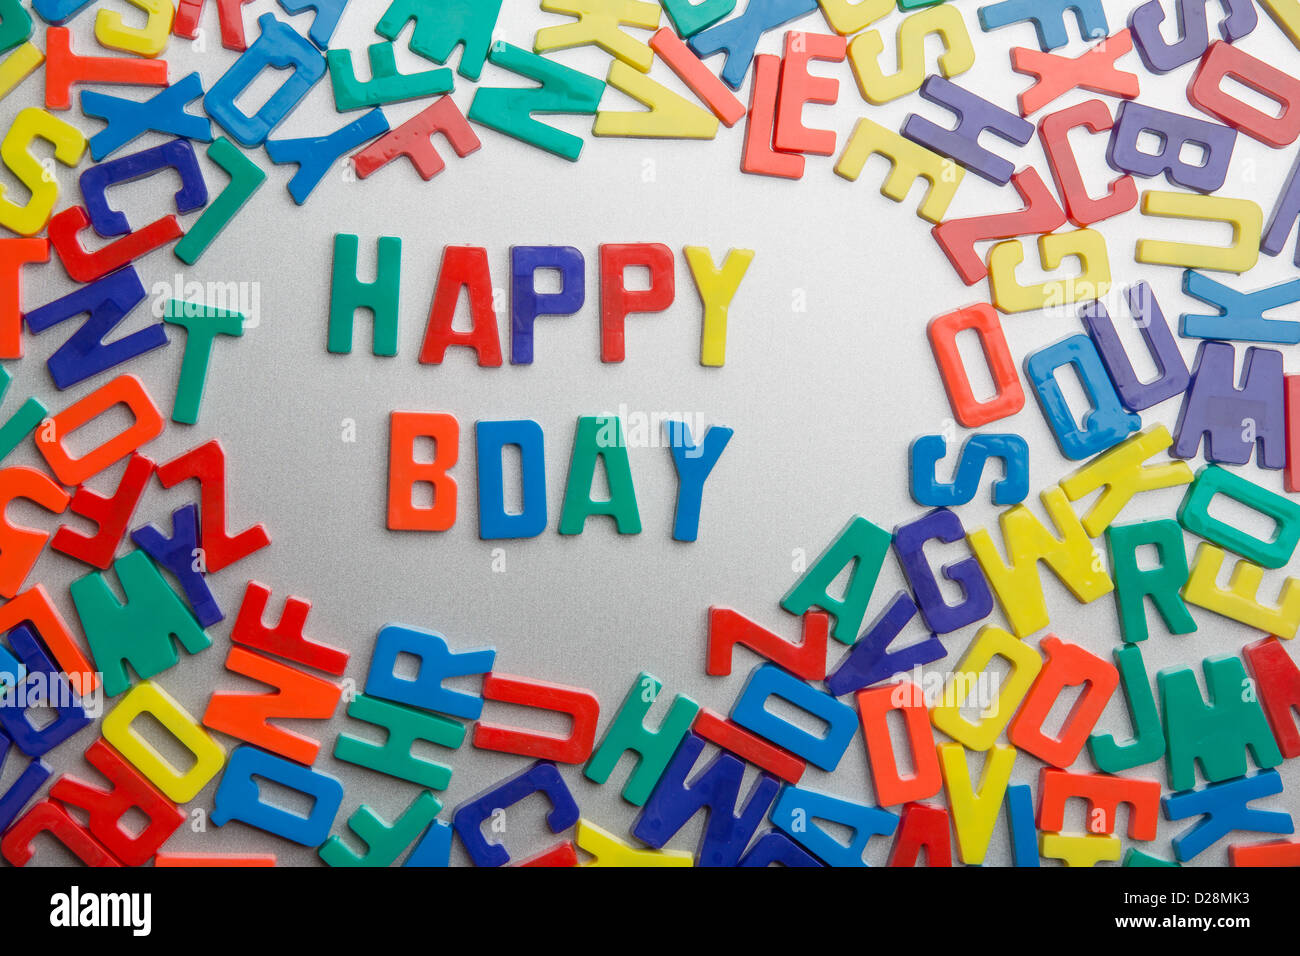 'Happy Bday' - aimants pour réfrigérateur messages sort sur un fouillis de lettres Banque D'Images